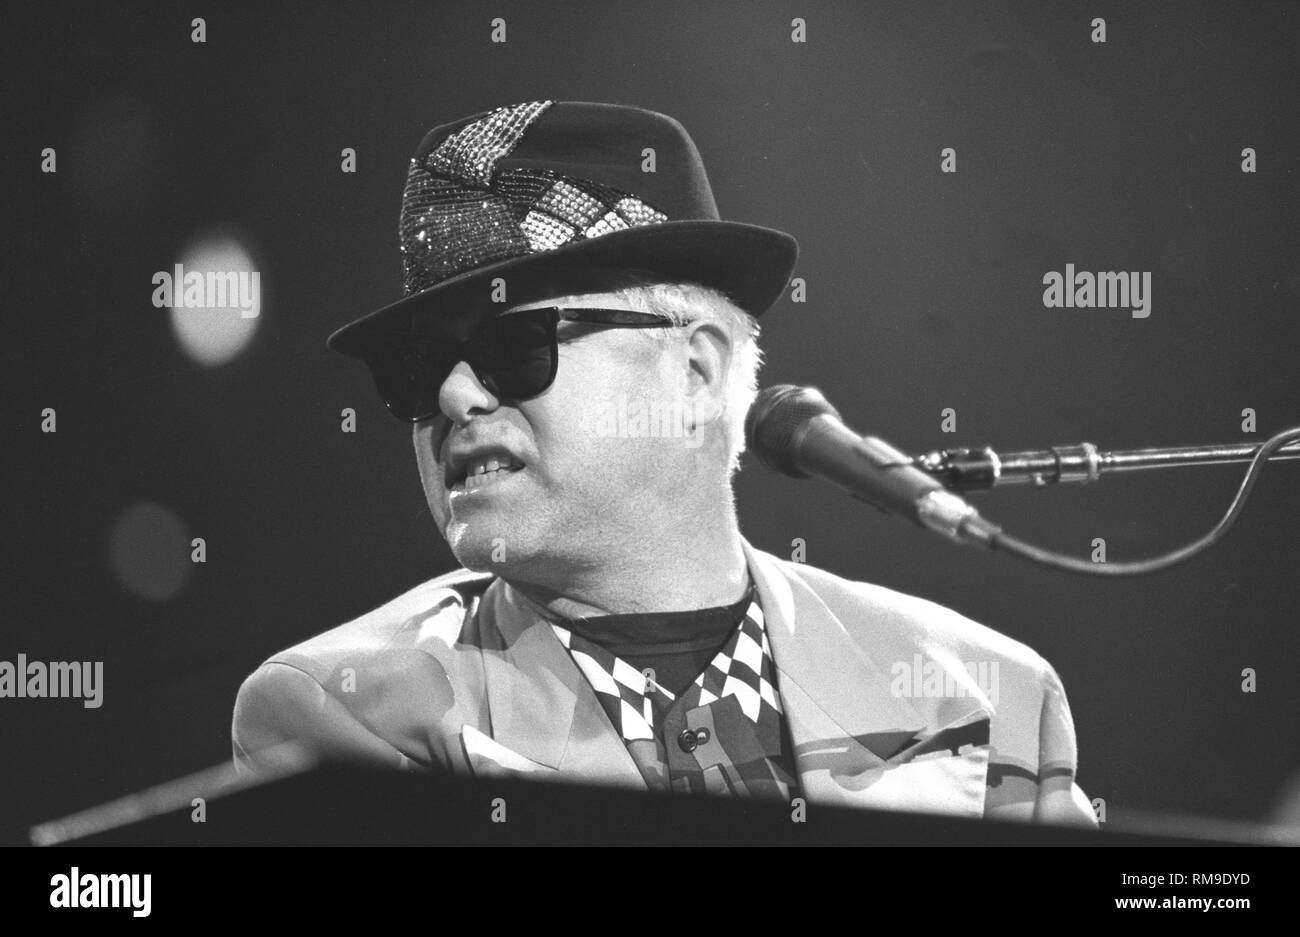 Chanteur, auteur-compositeur, pianiste et compositeur Elton John est montré sur scène pendant un concert en direct de l'apparence. Banque D'Images